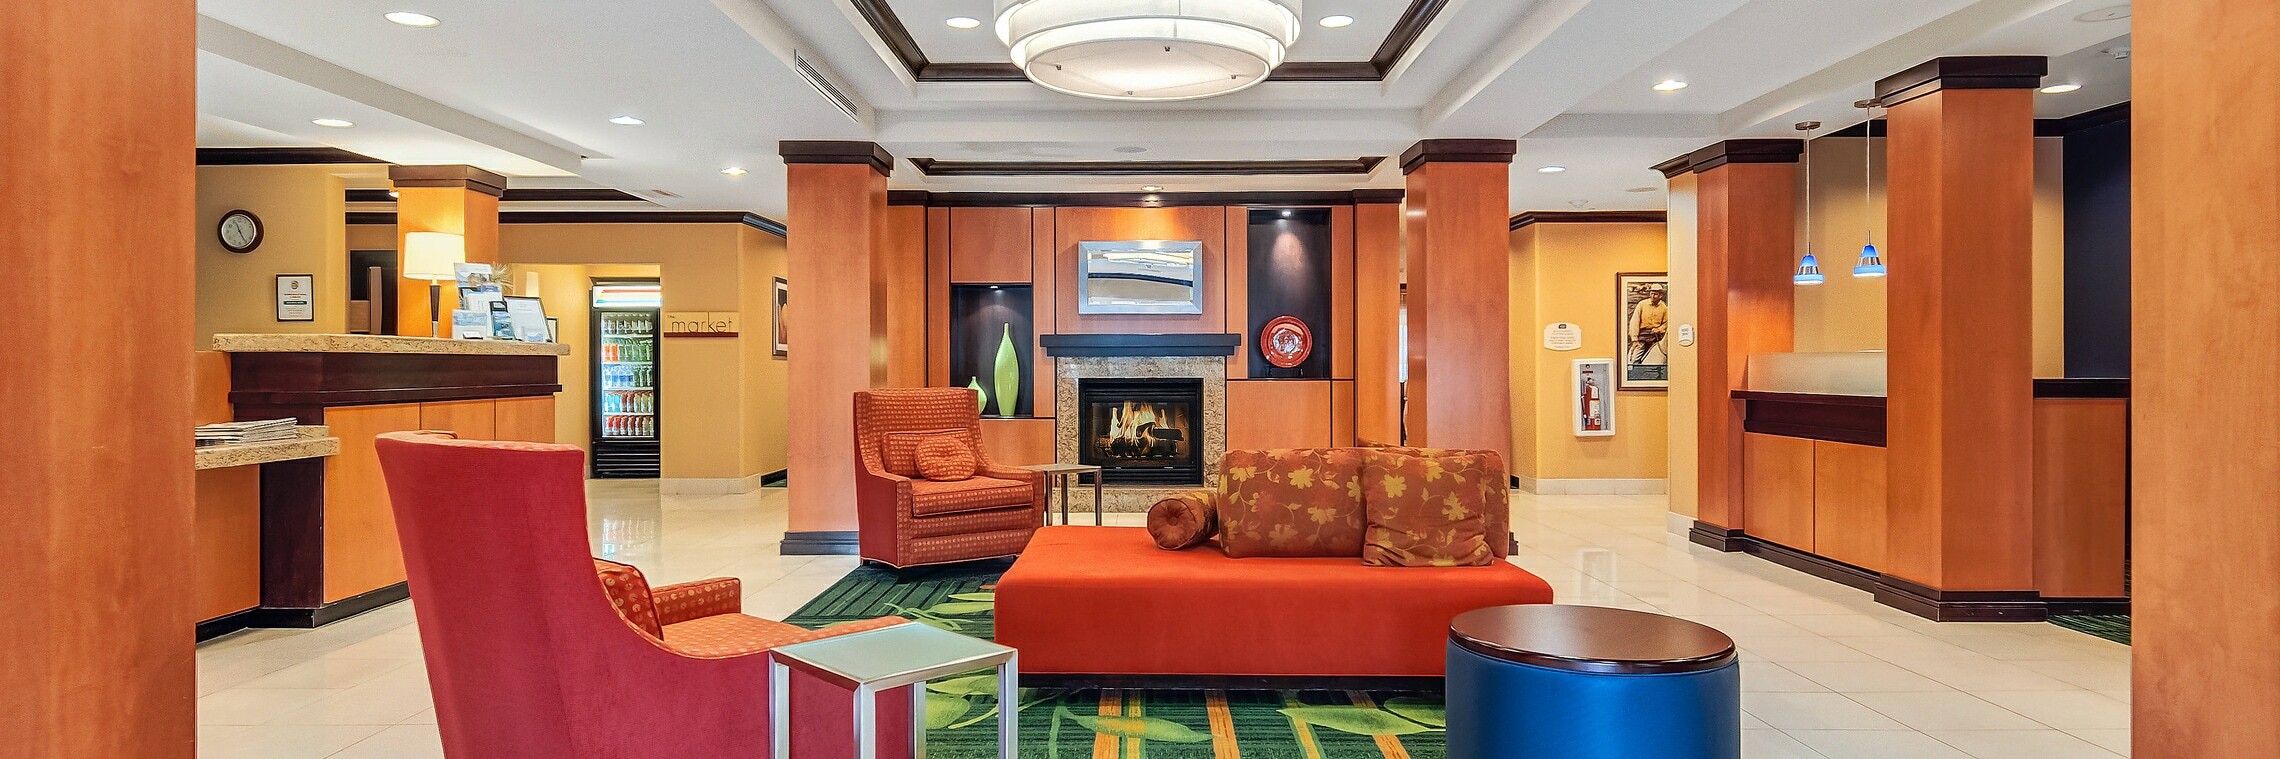 Photo of Fairfield Inn & Suites Worcester Auburn, Auburn, MA